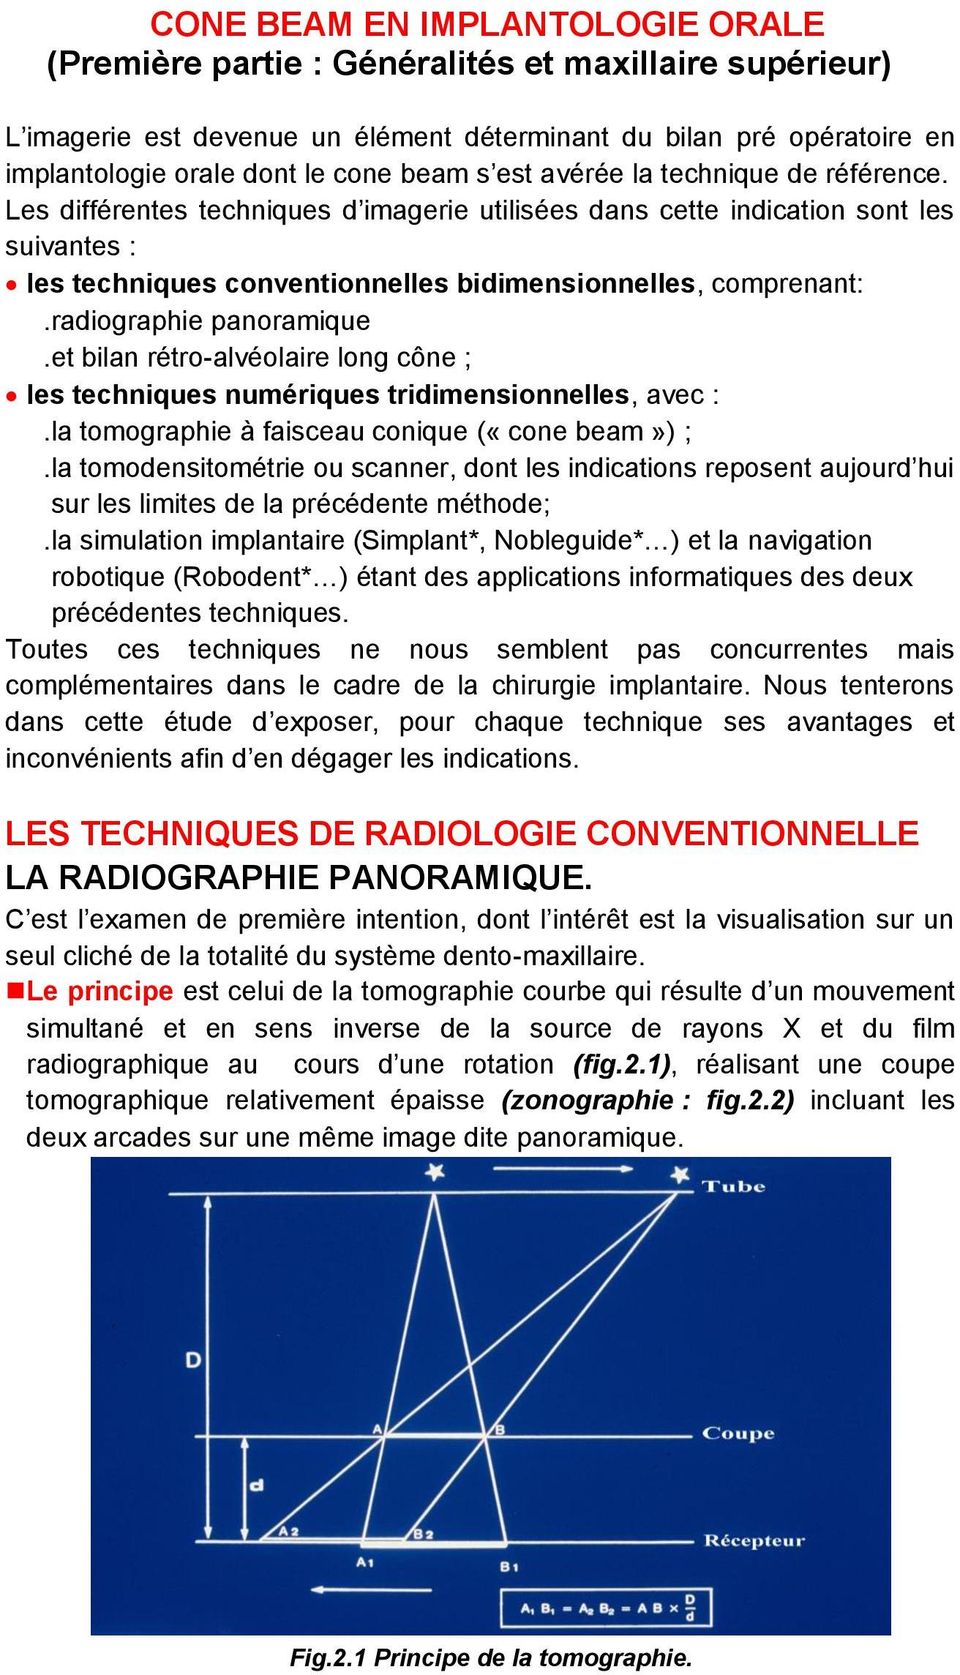 radiographie panoramique.et bilan rétro-alvéolaire long cône ; les techniques numériques tridimensionnelles, avec :.la tomographie à faisceau conique («cone beam») ;.